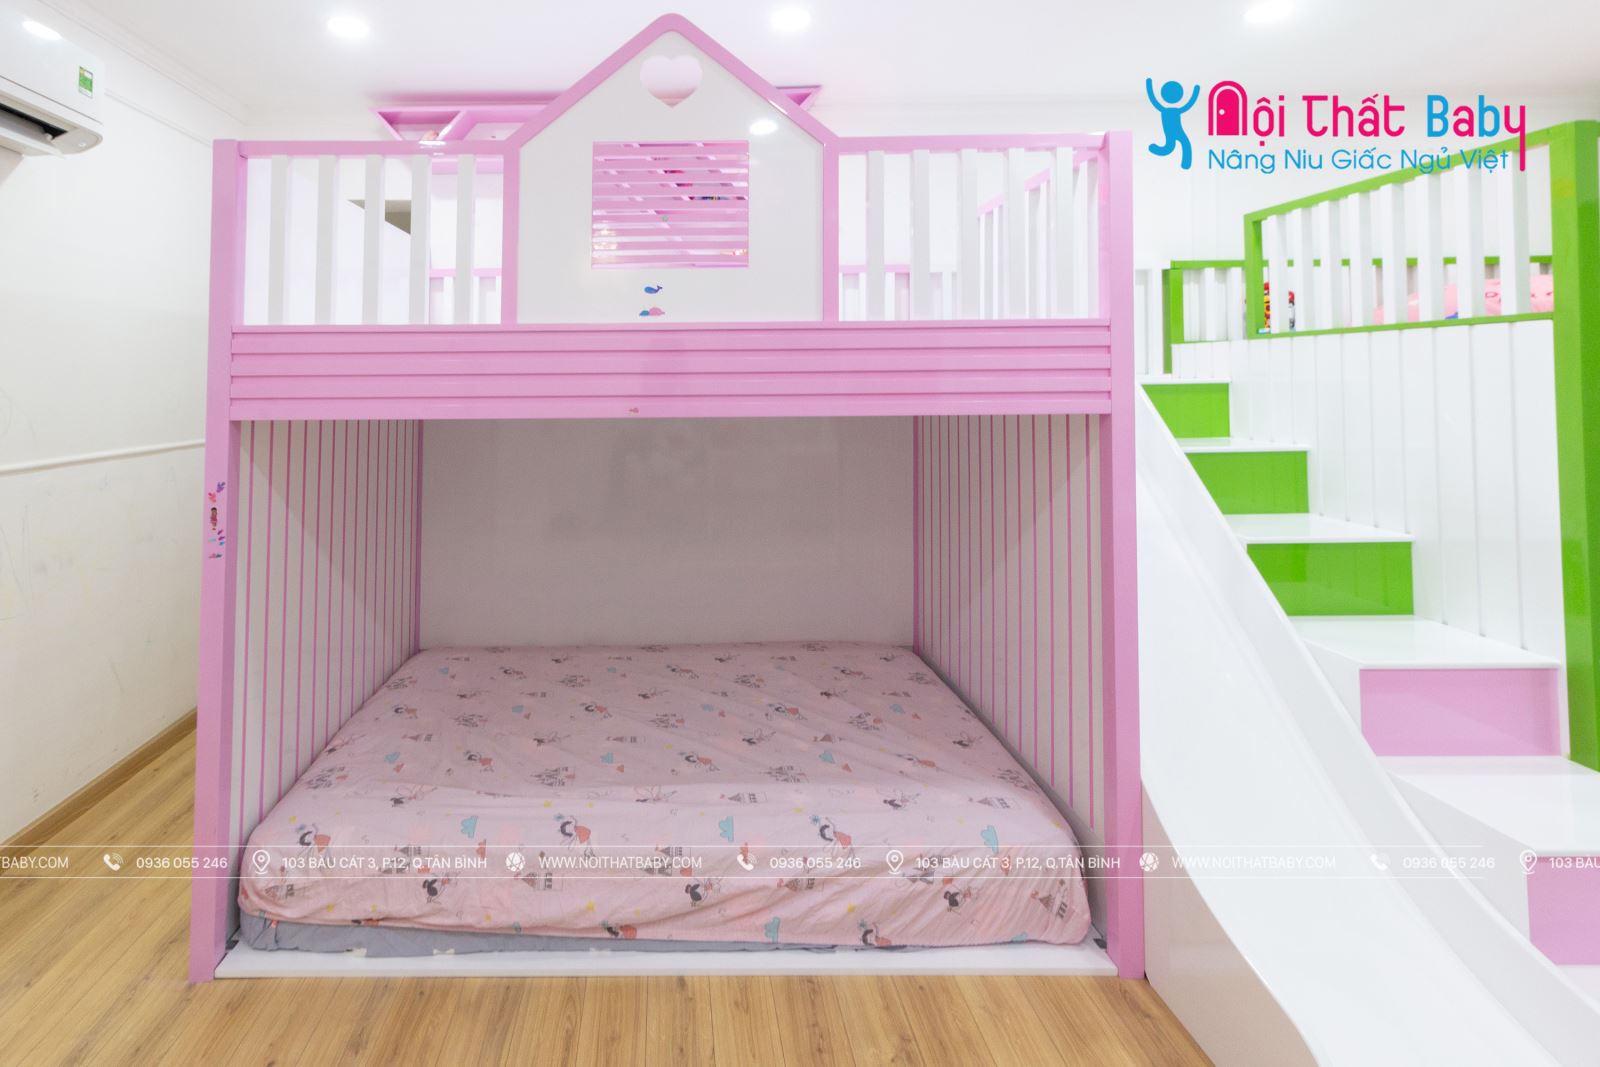 Hình ảnh thực tế thi công phòng ngủ bé nhà chị Trâm - Tân Bình